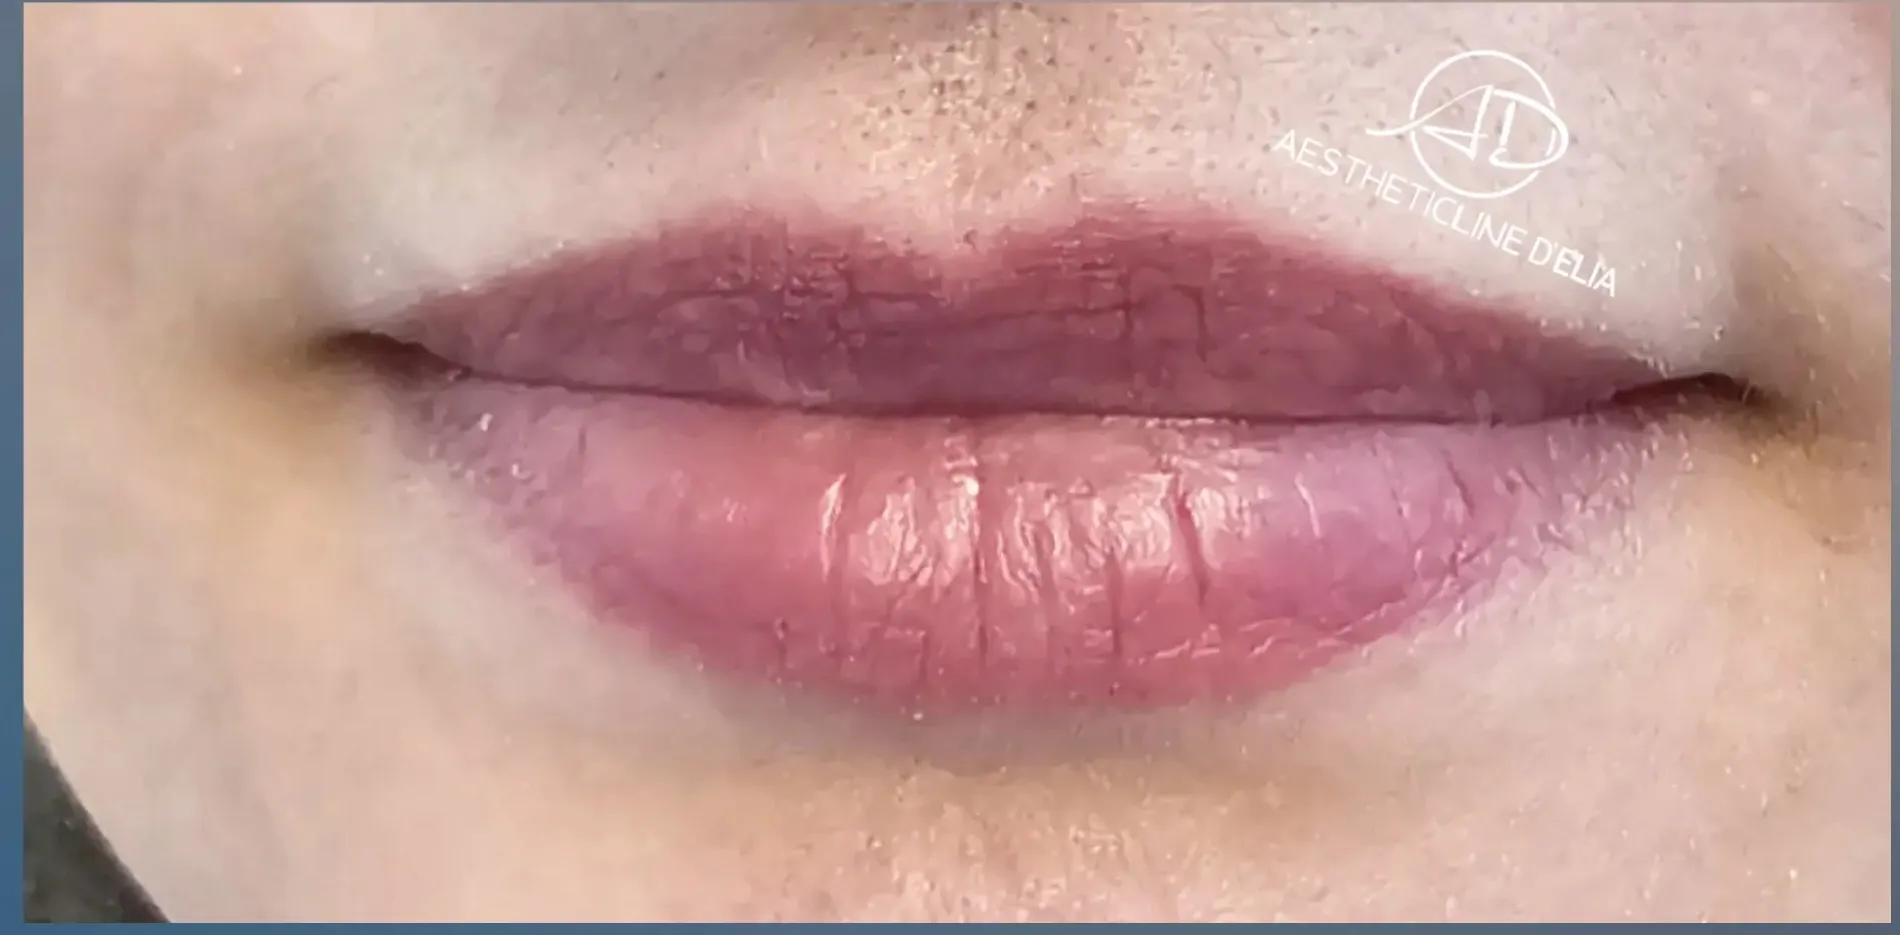 Lippen 4 nachher